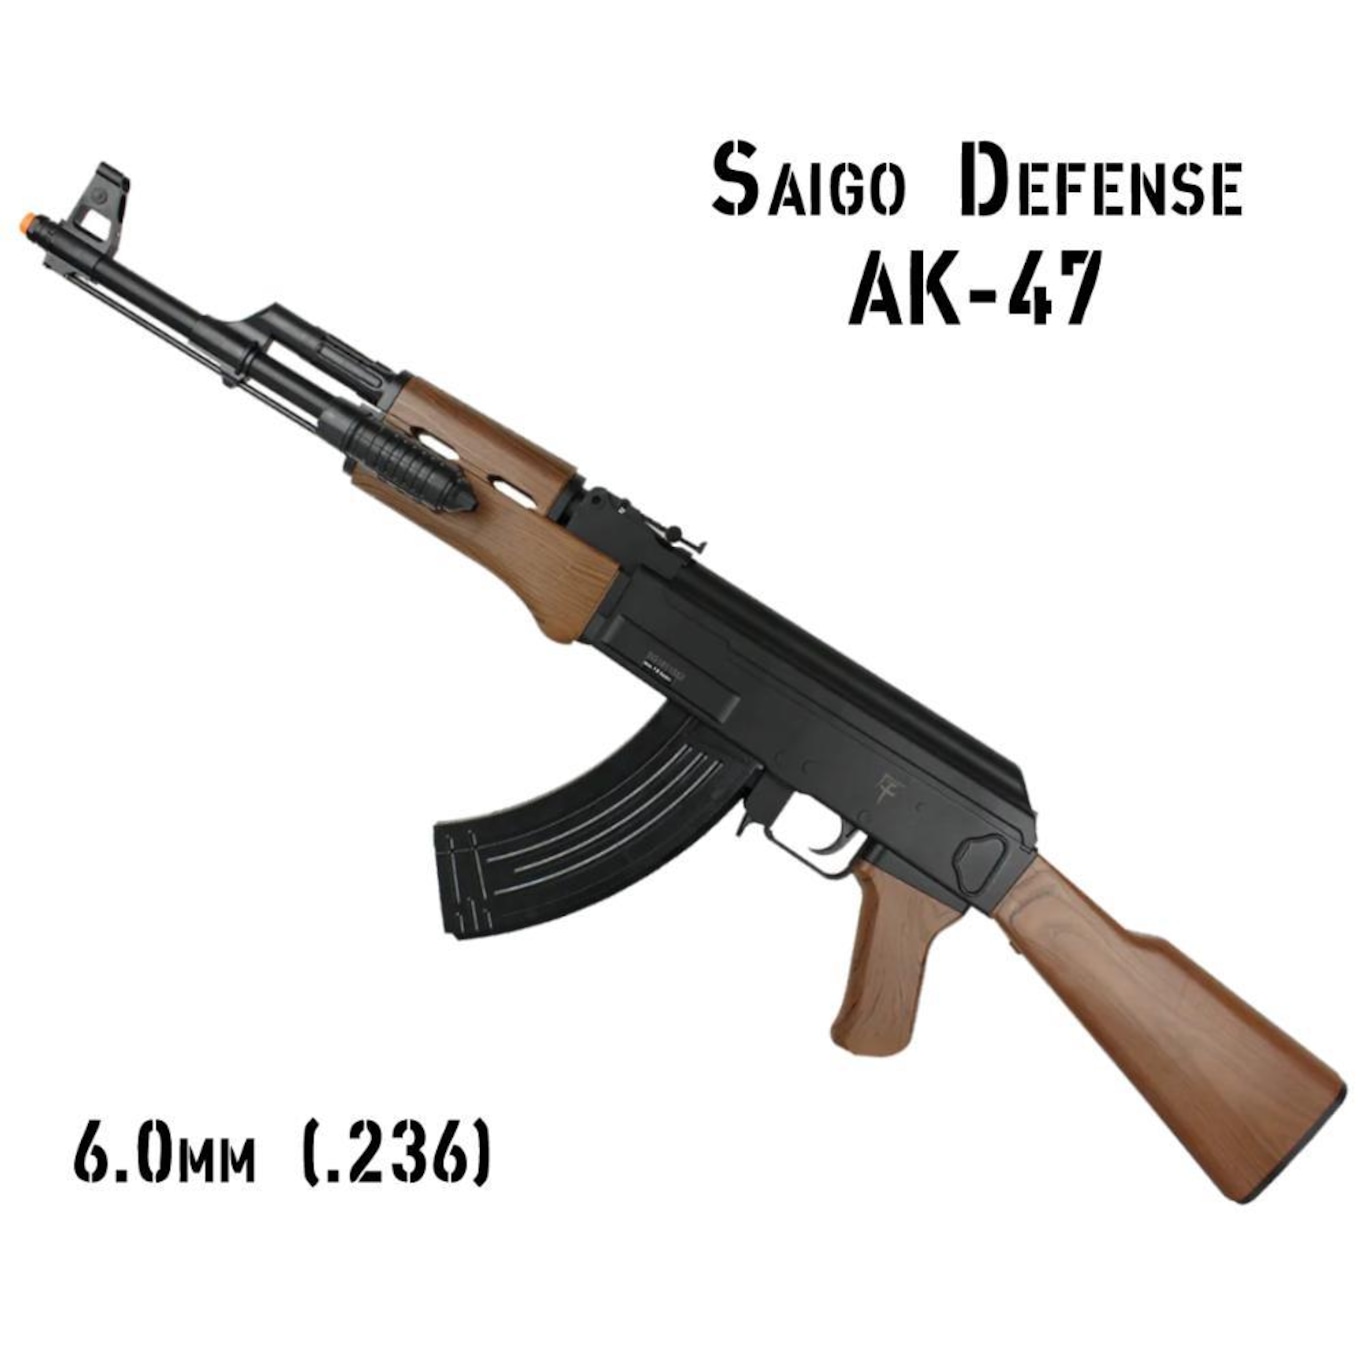 SAIGO AK47 SPRING - Spring - Airsoft store, replicas and military